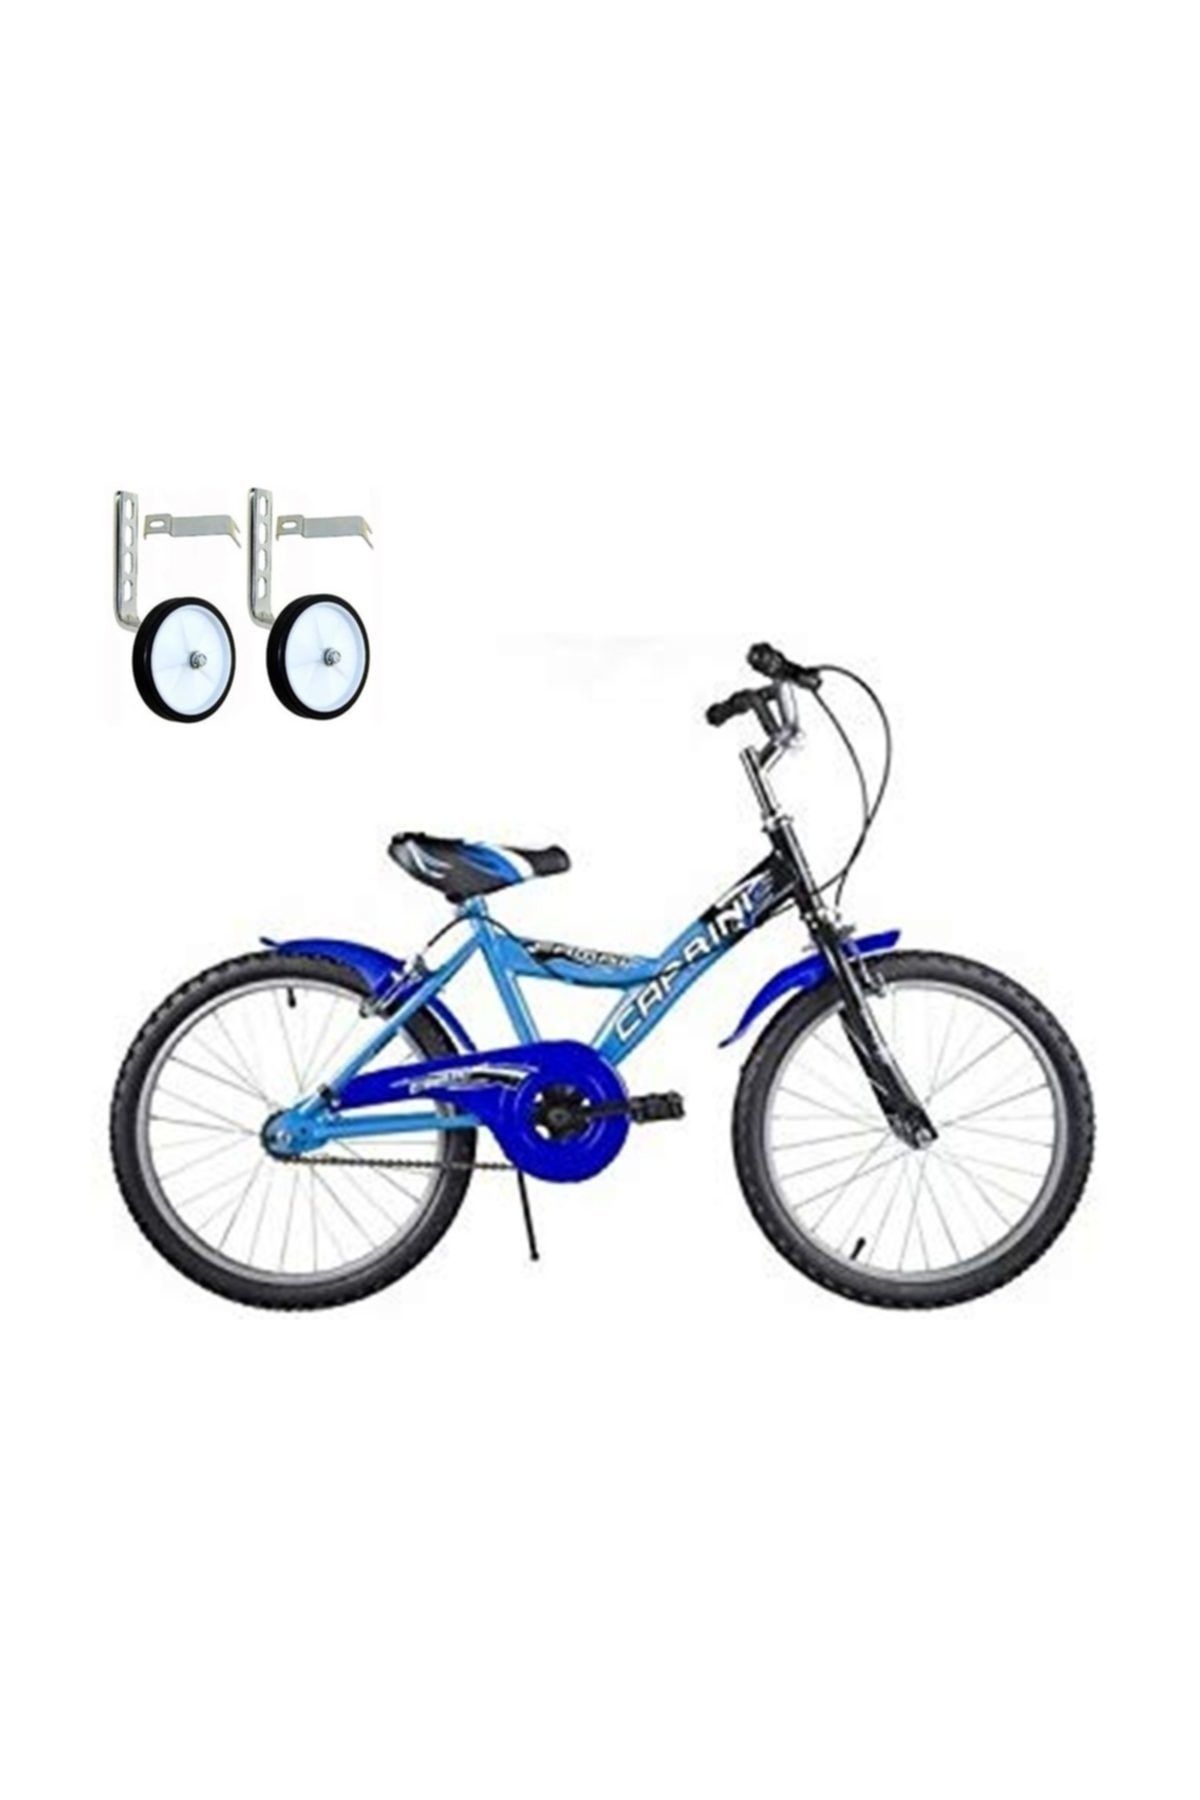 Tunca Beemer 20 Jant Çocuk Bisikleti 5-6-7-8-9-10-11 Yaş Çocuk Bisikleti